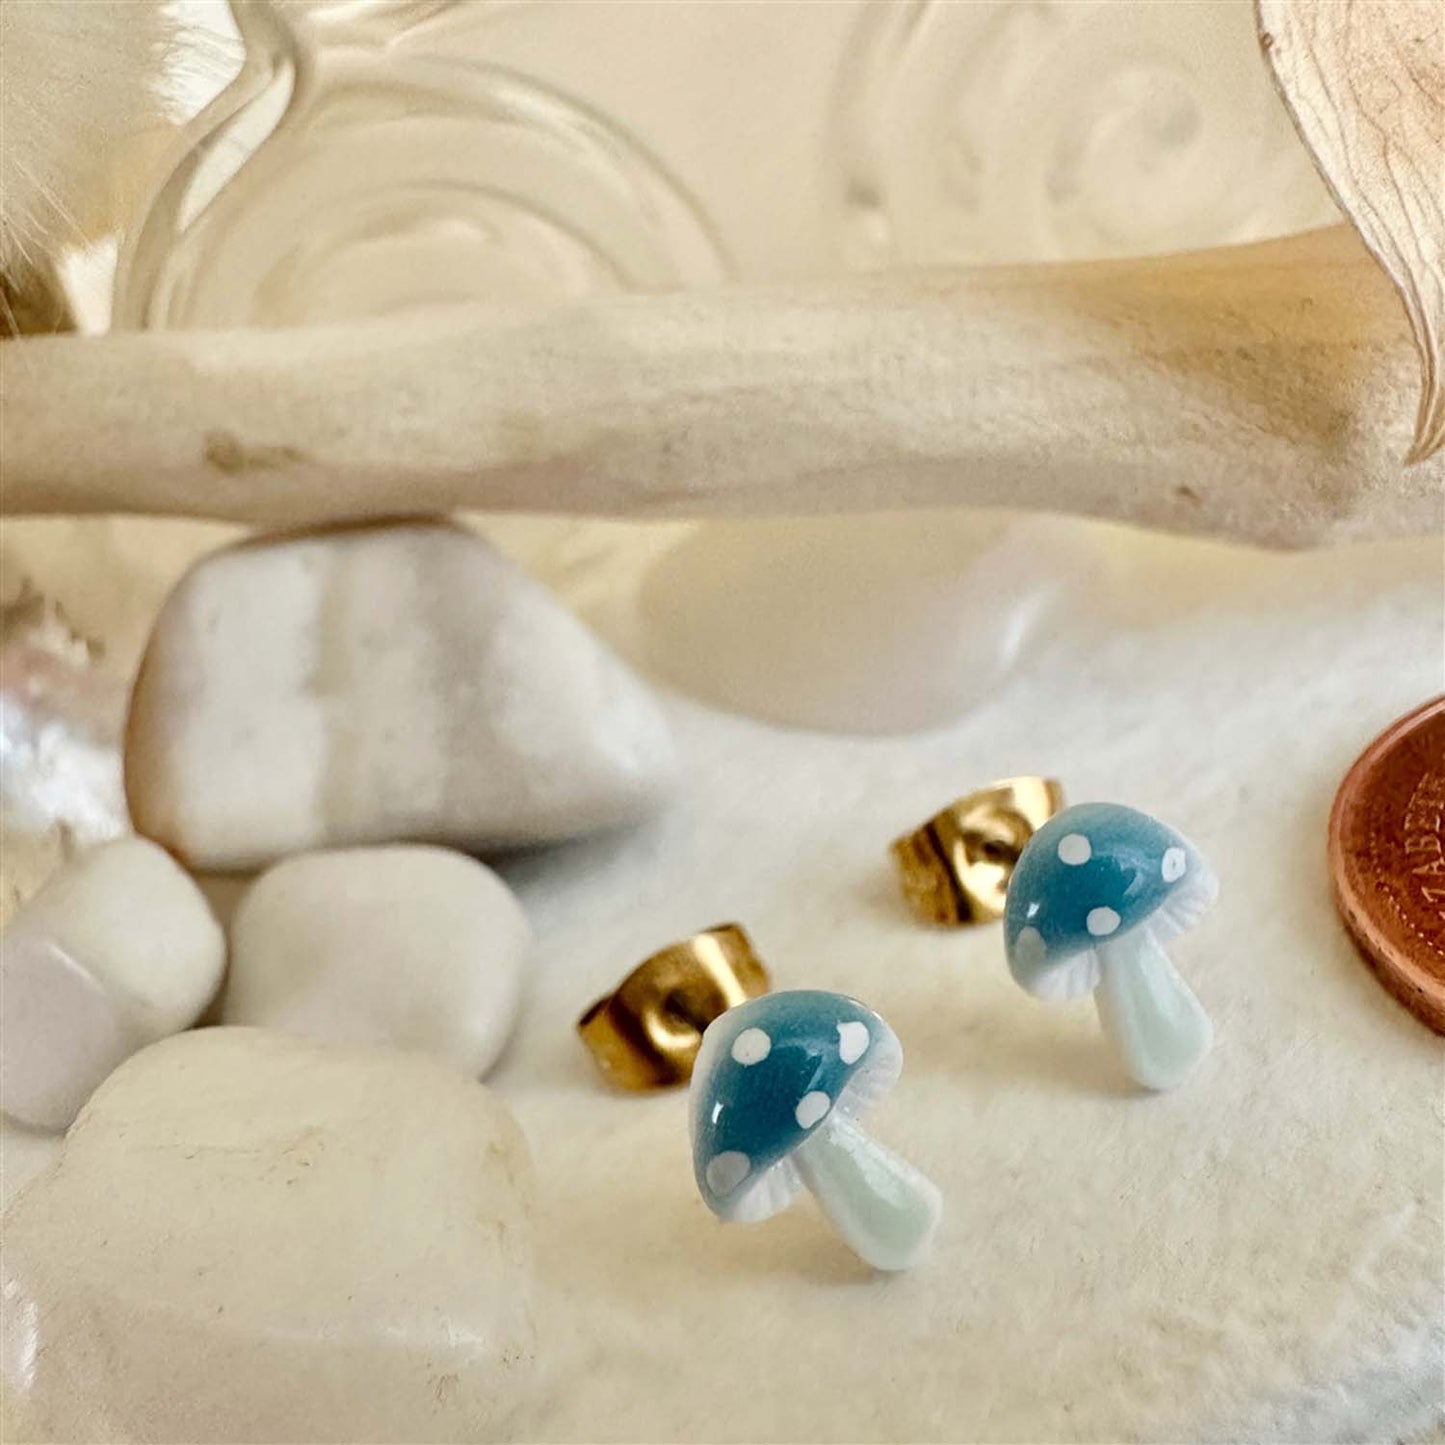 Agaric - Porcelain Mushroom Stud Earrings in Blue